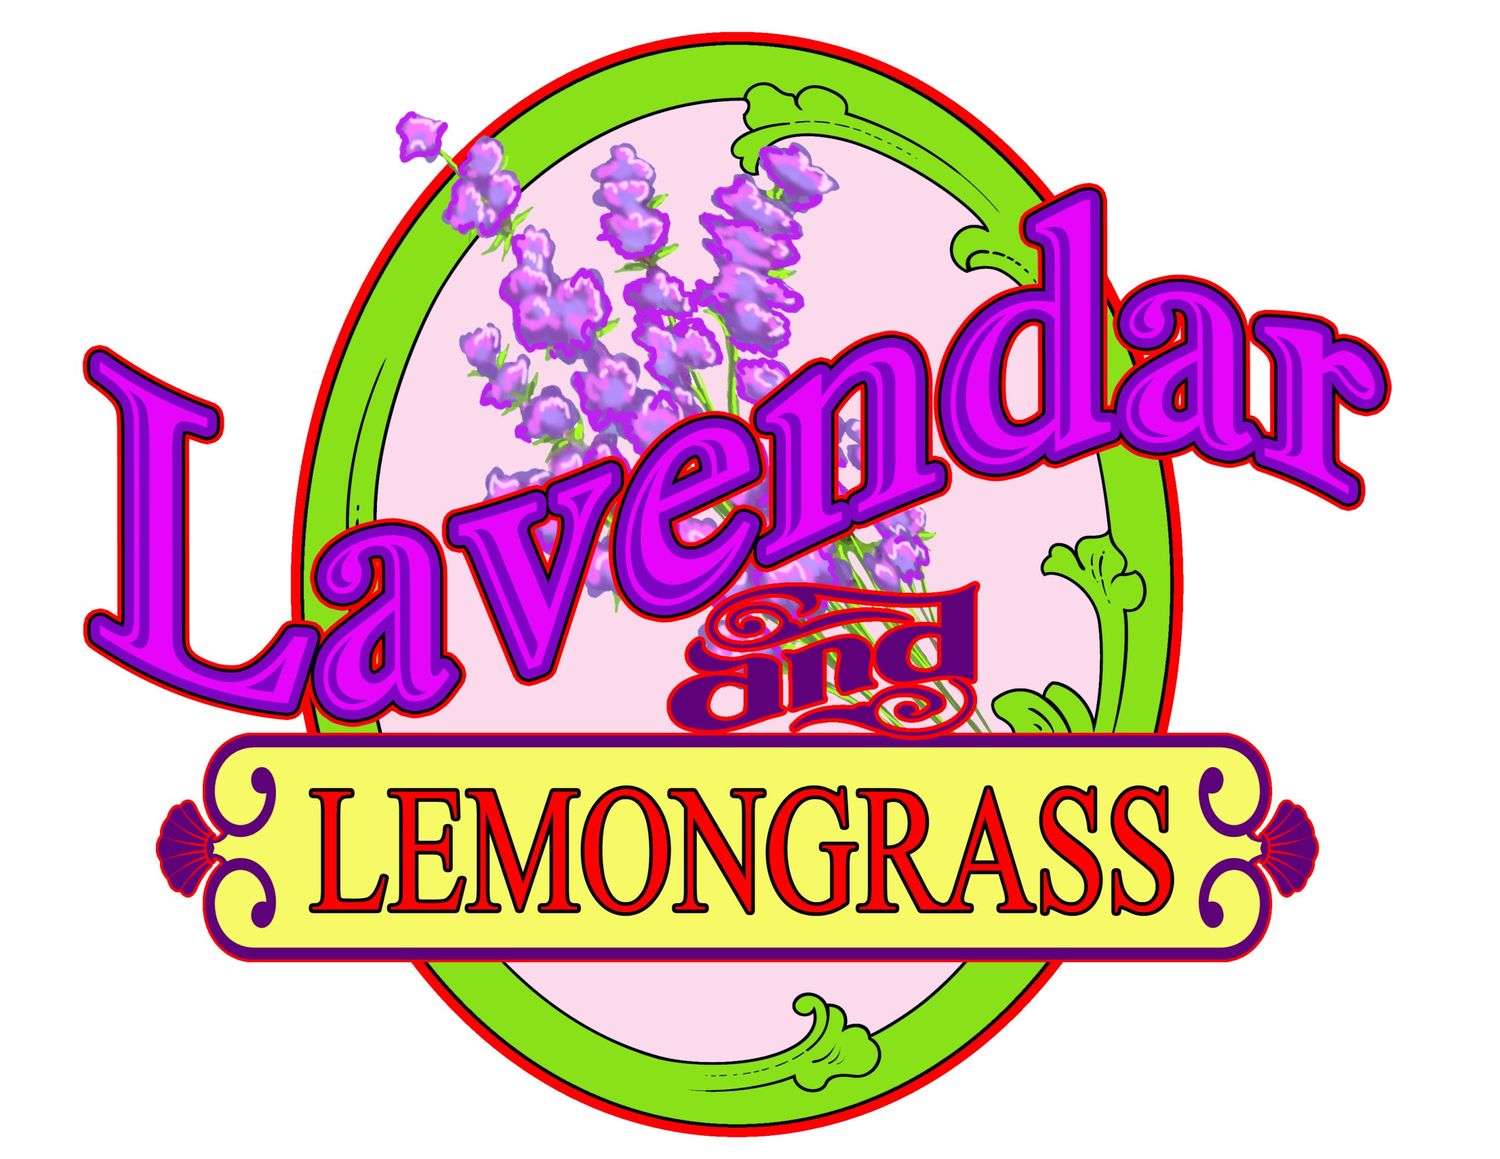 Lavender Lemongrass